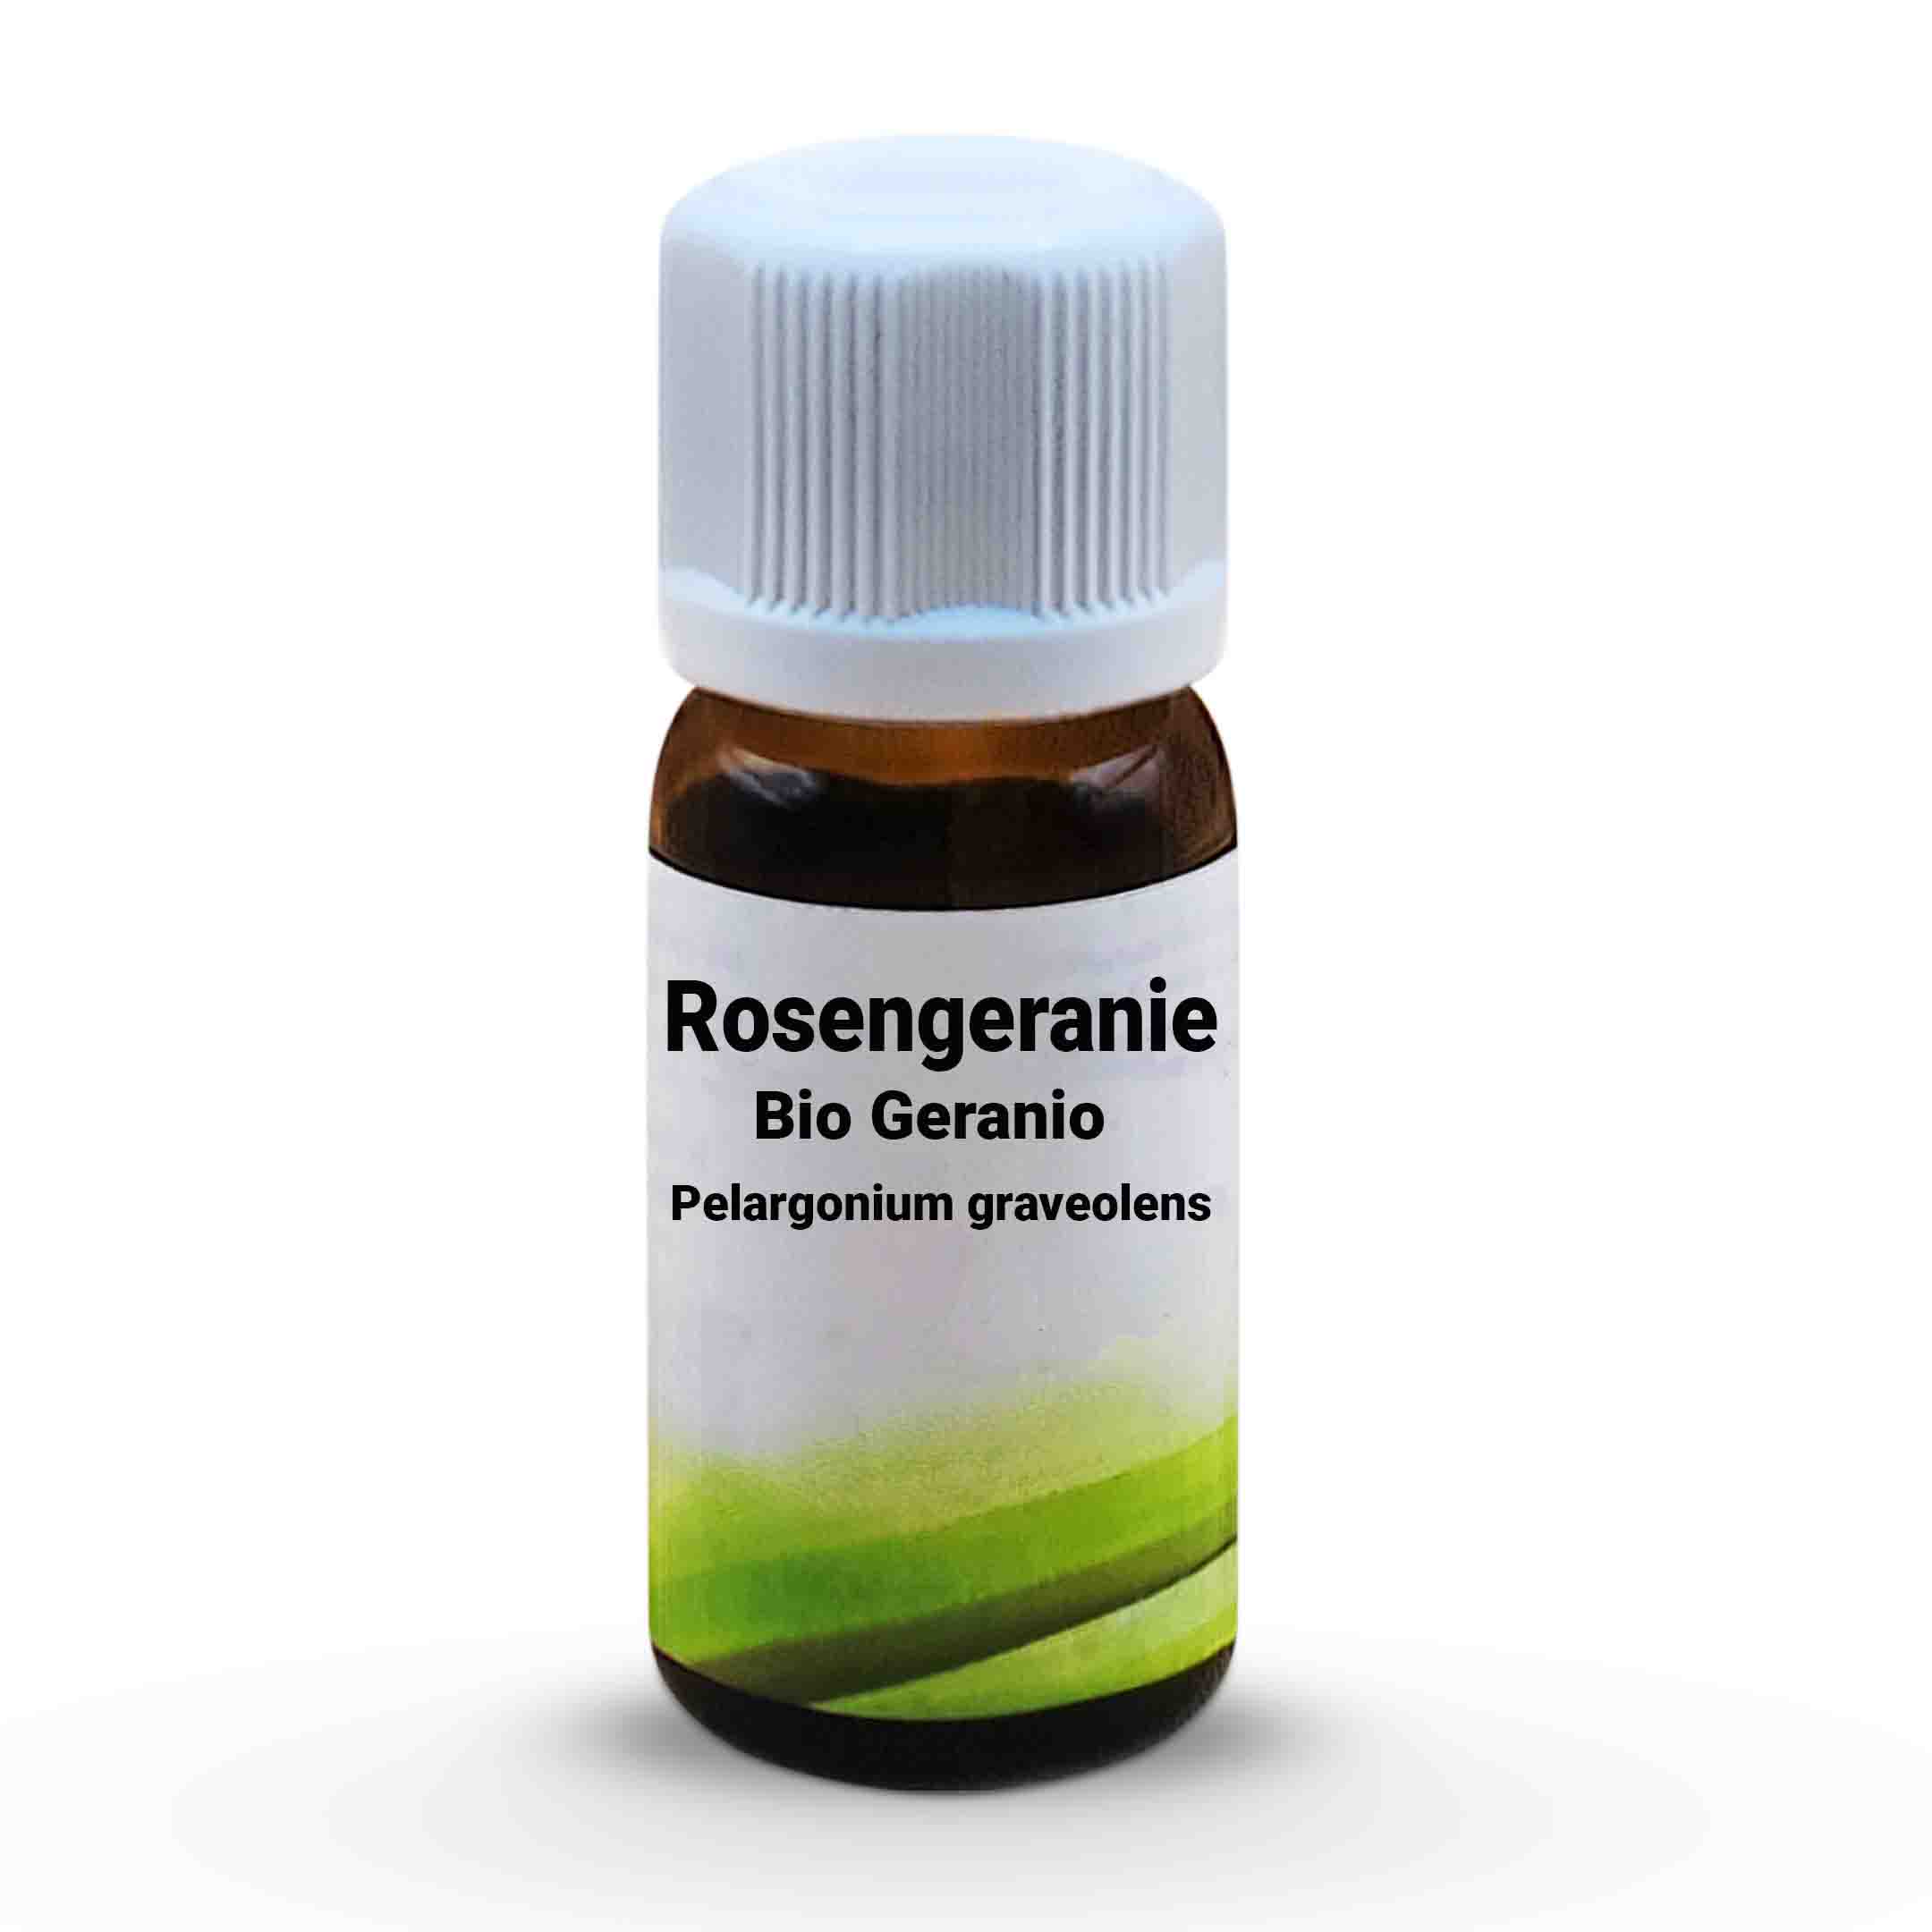 Bio Rosengeranie  Geranio   Pelargonium graveolens